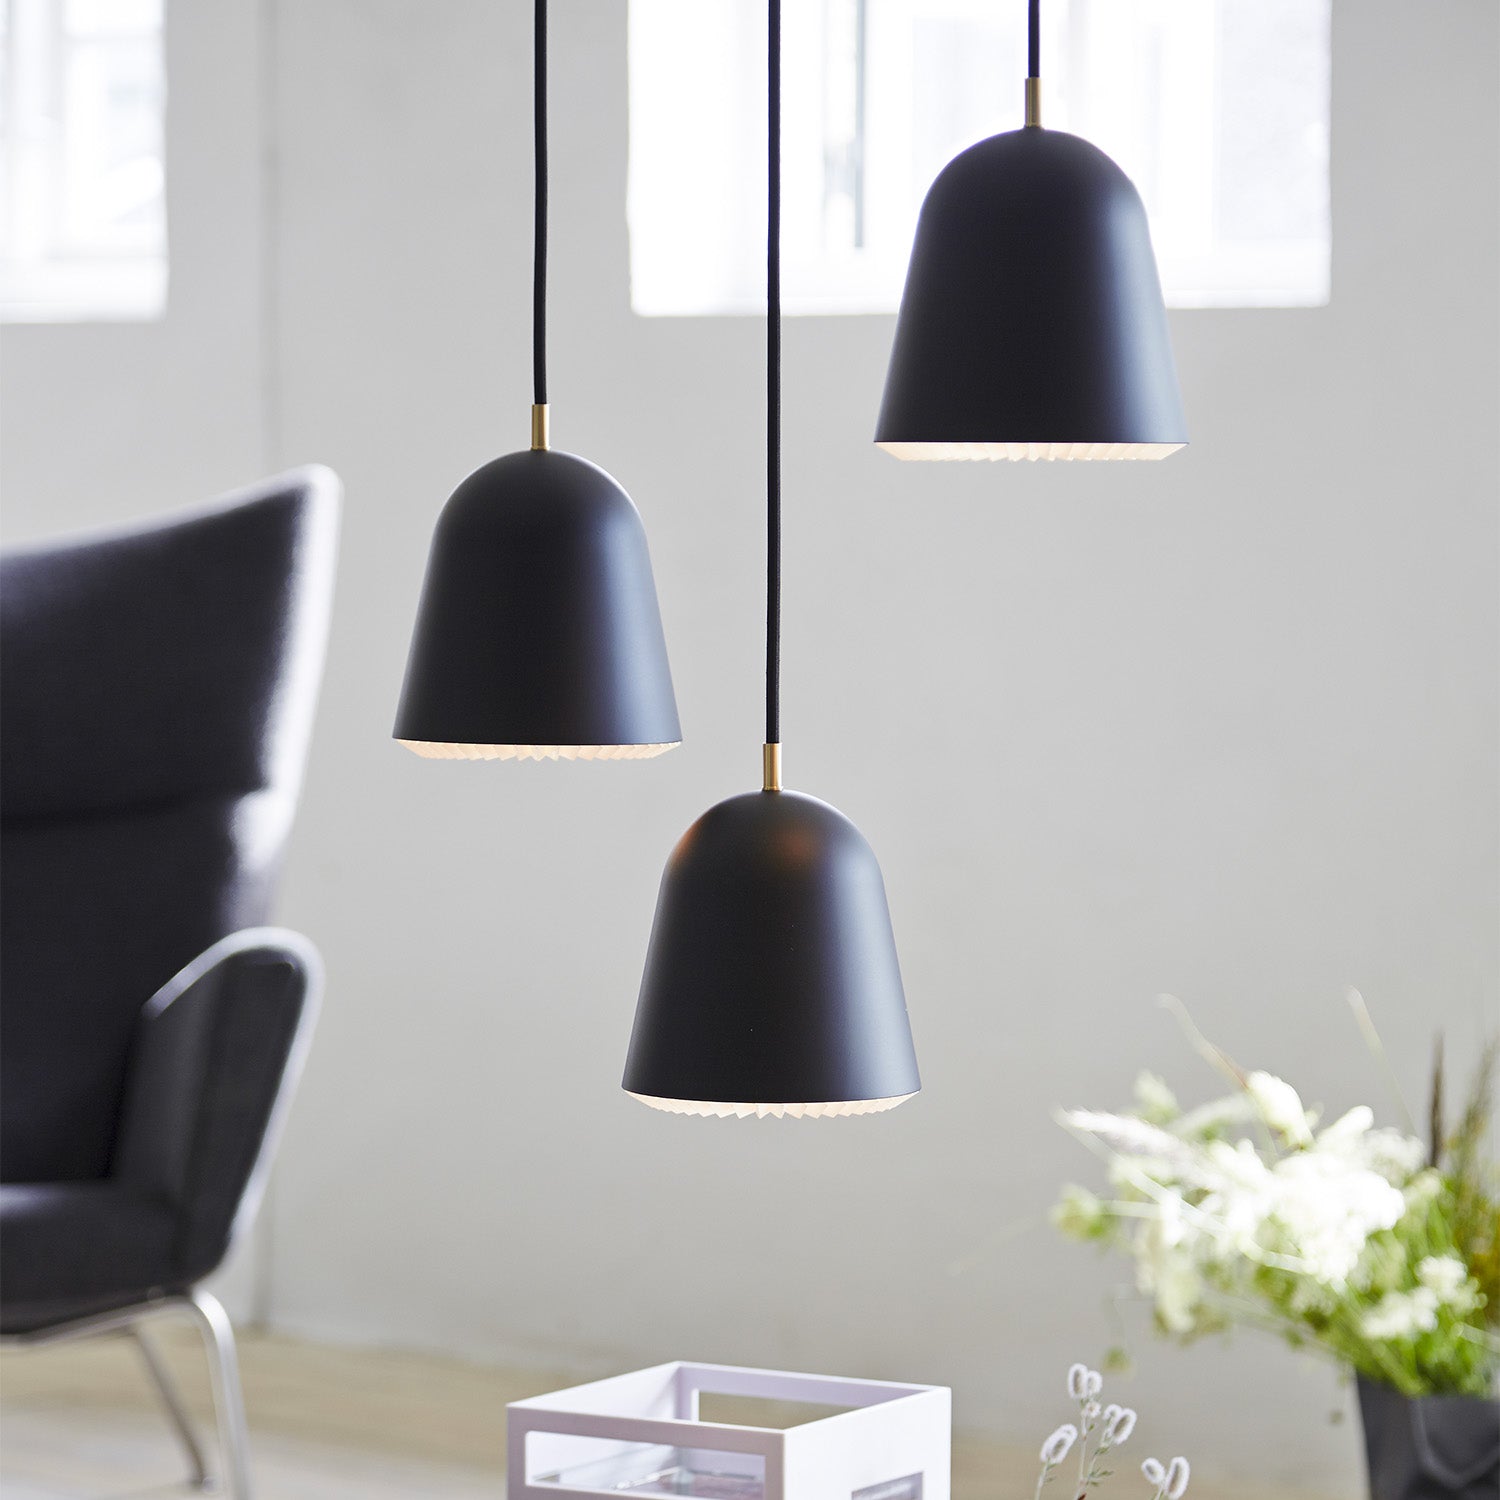 CACHÉ - Designer black pendant light for modern bedroom